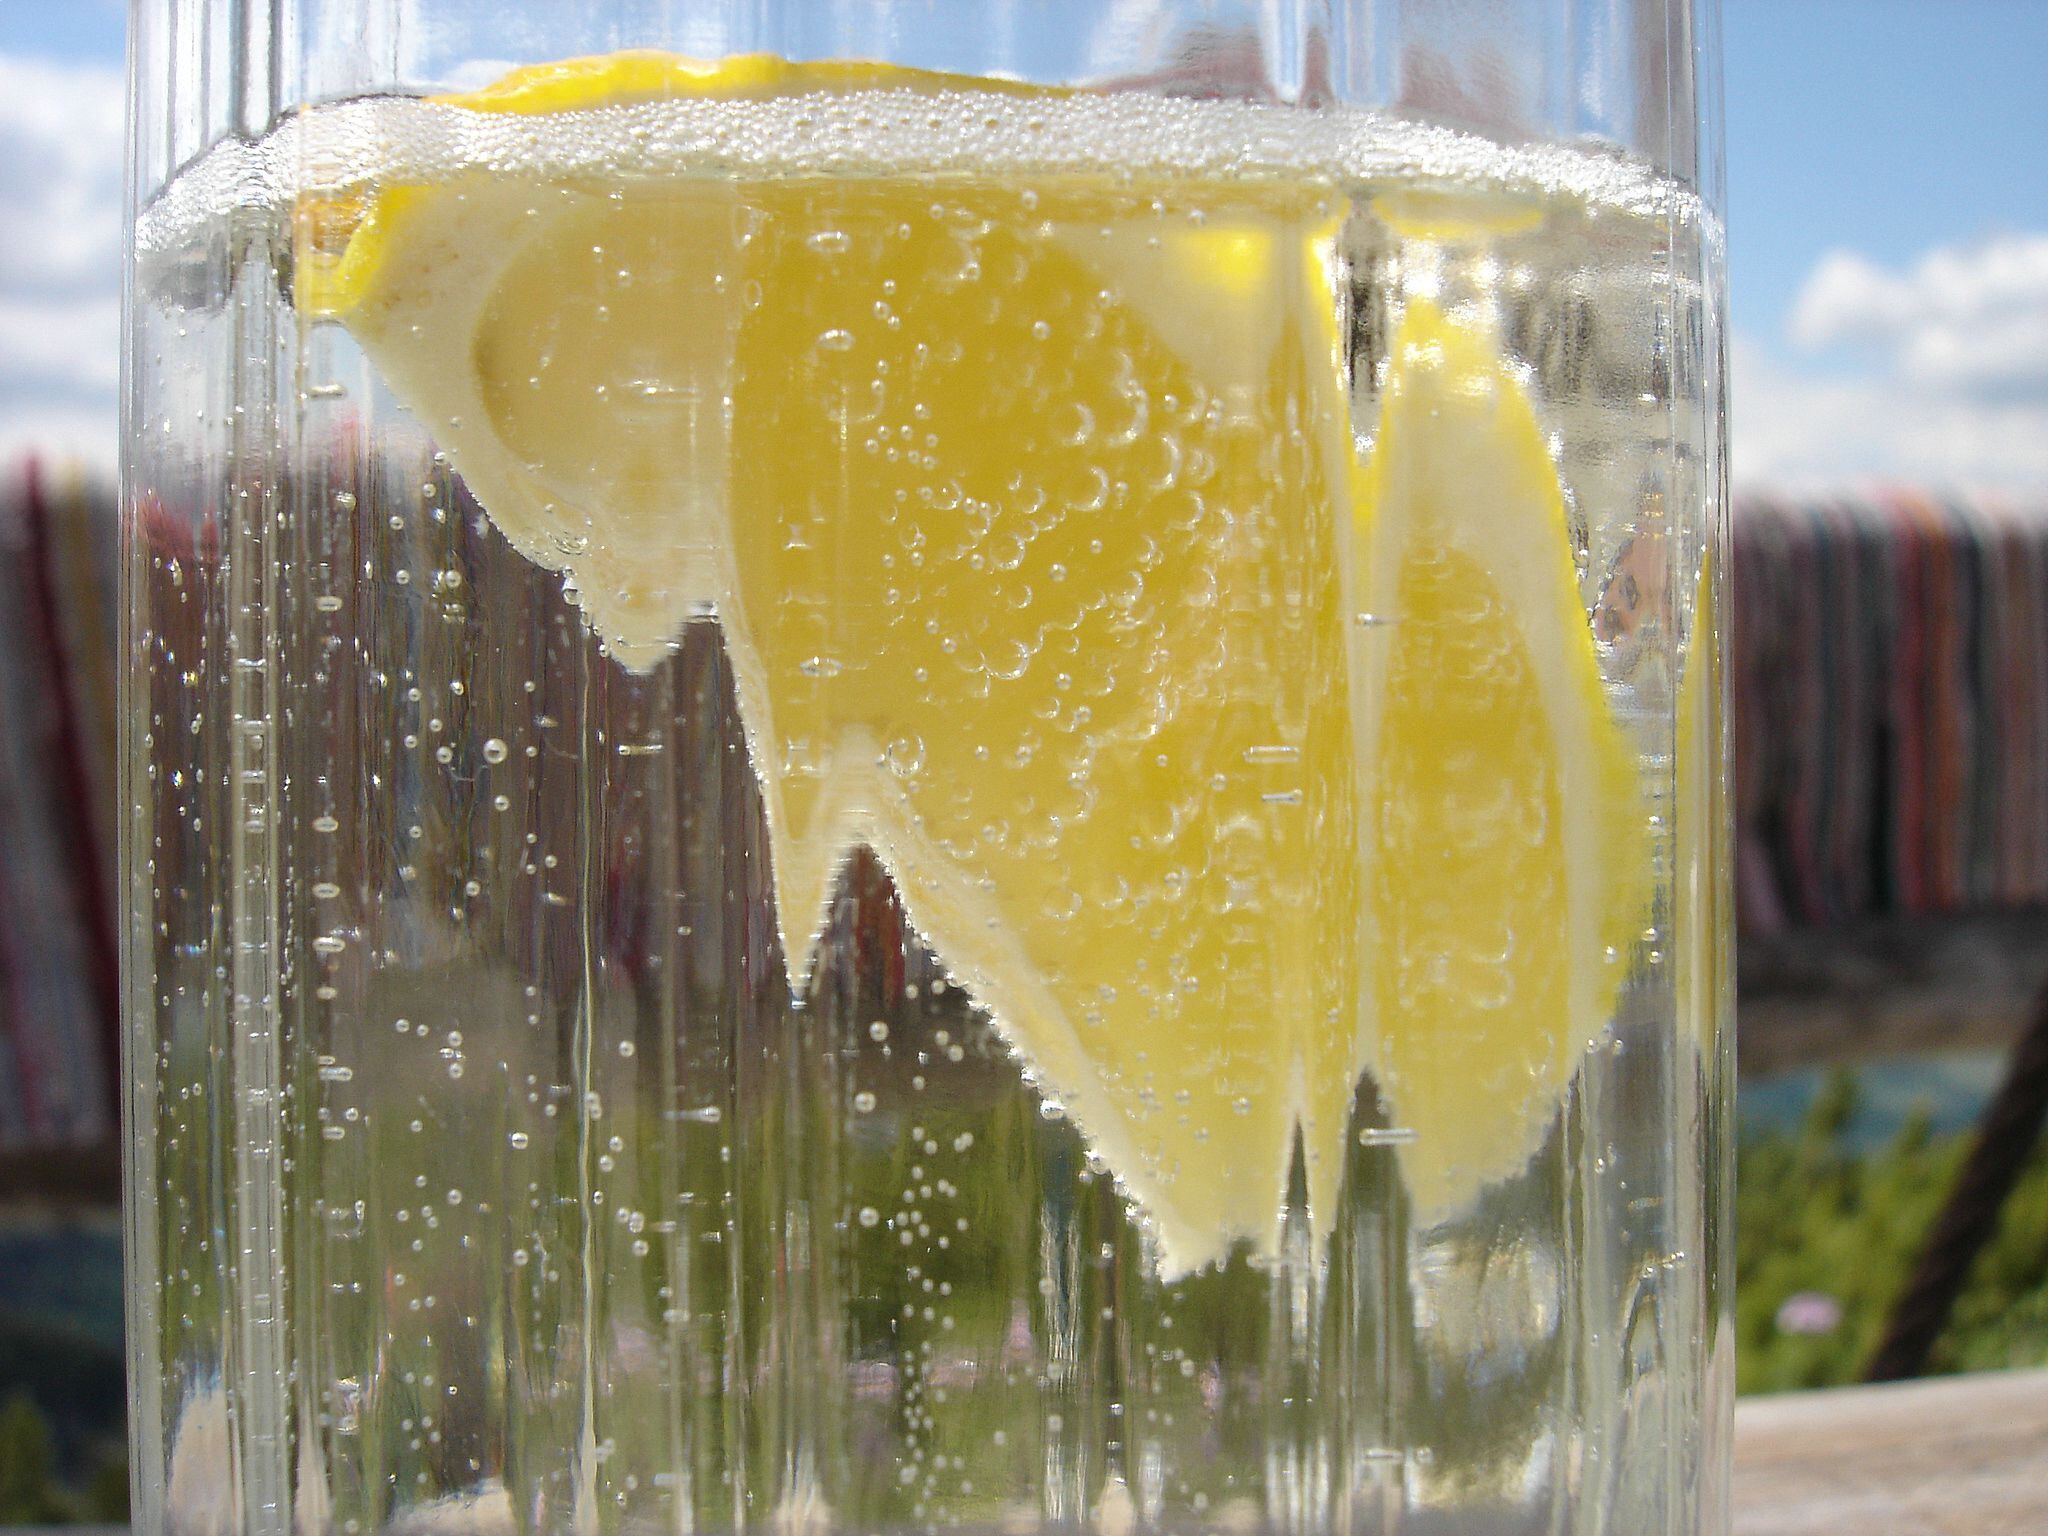 Al agua mineral se le suele agregar sabor con frutas cítricas. (Foto: Wikimedia Commons)